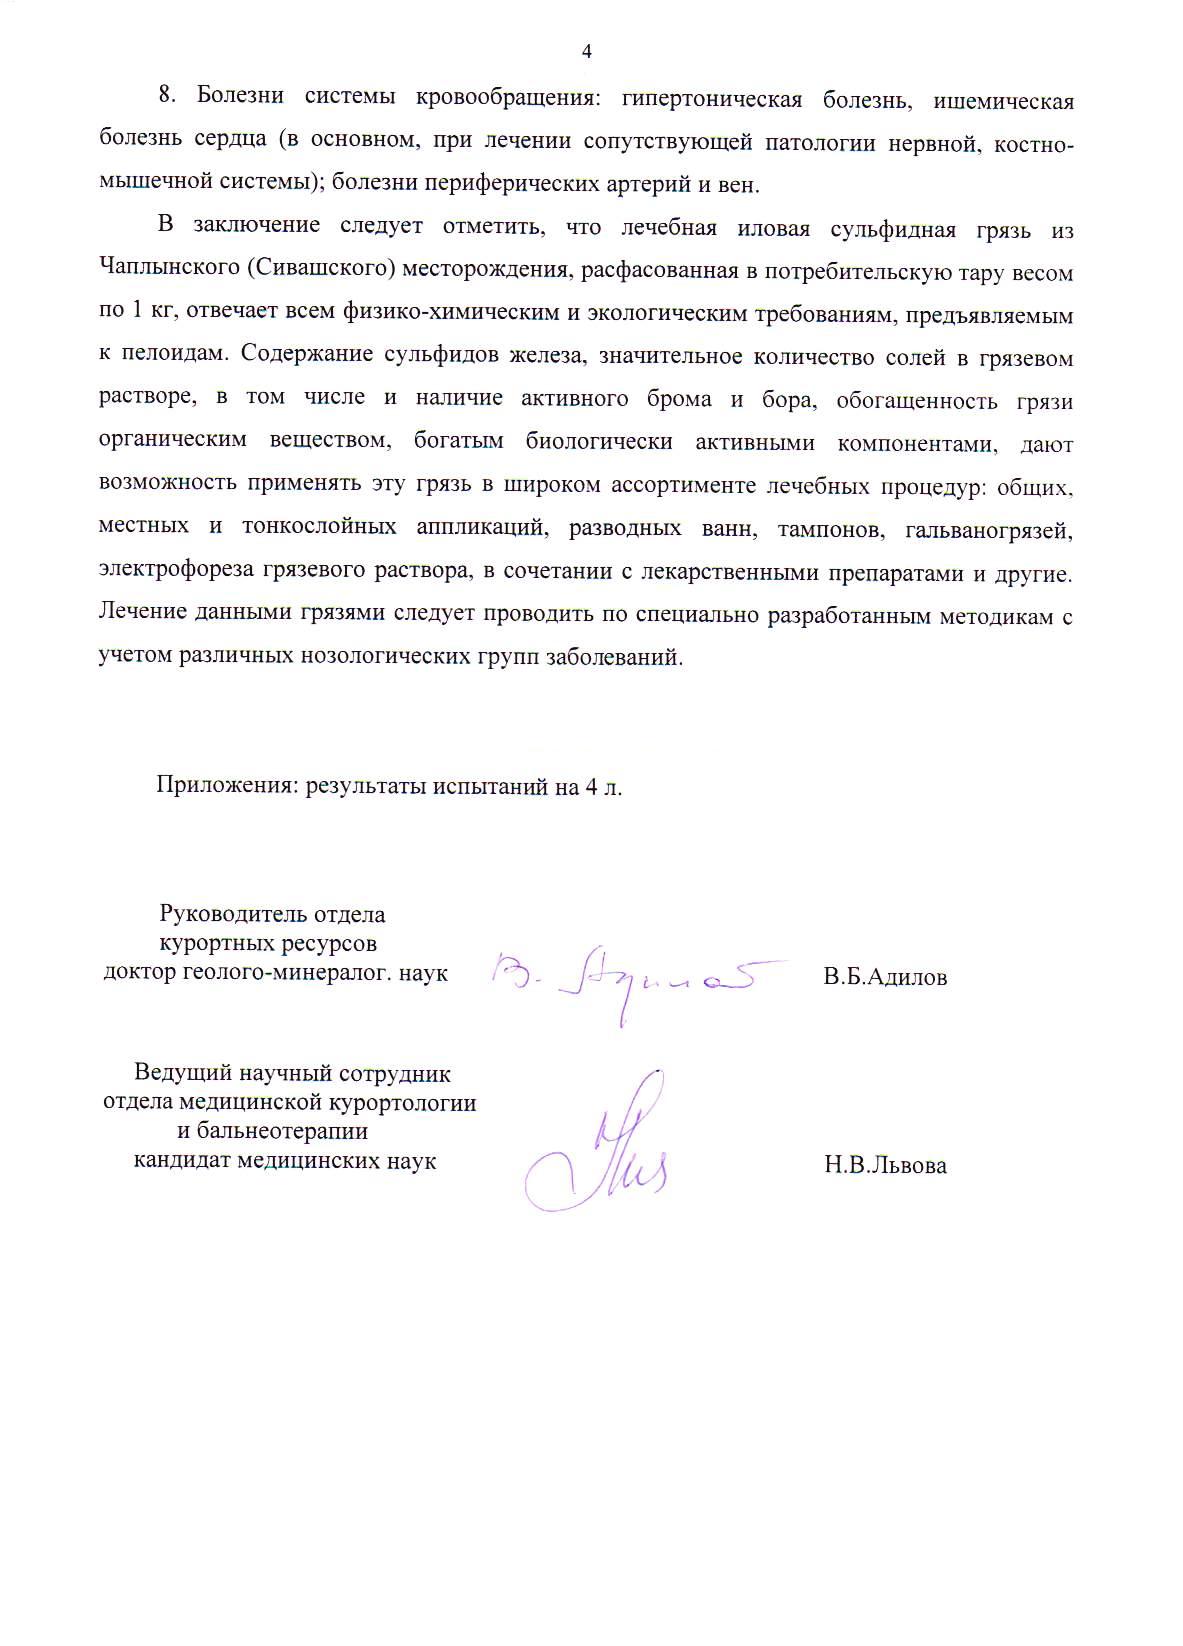 Бальнеологическое заключение о лечебных грязях Сиваш в России страница4